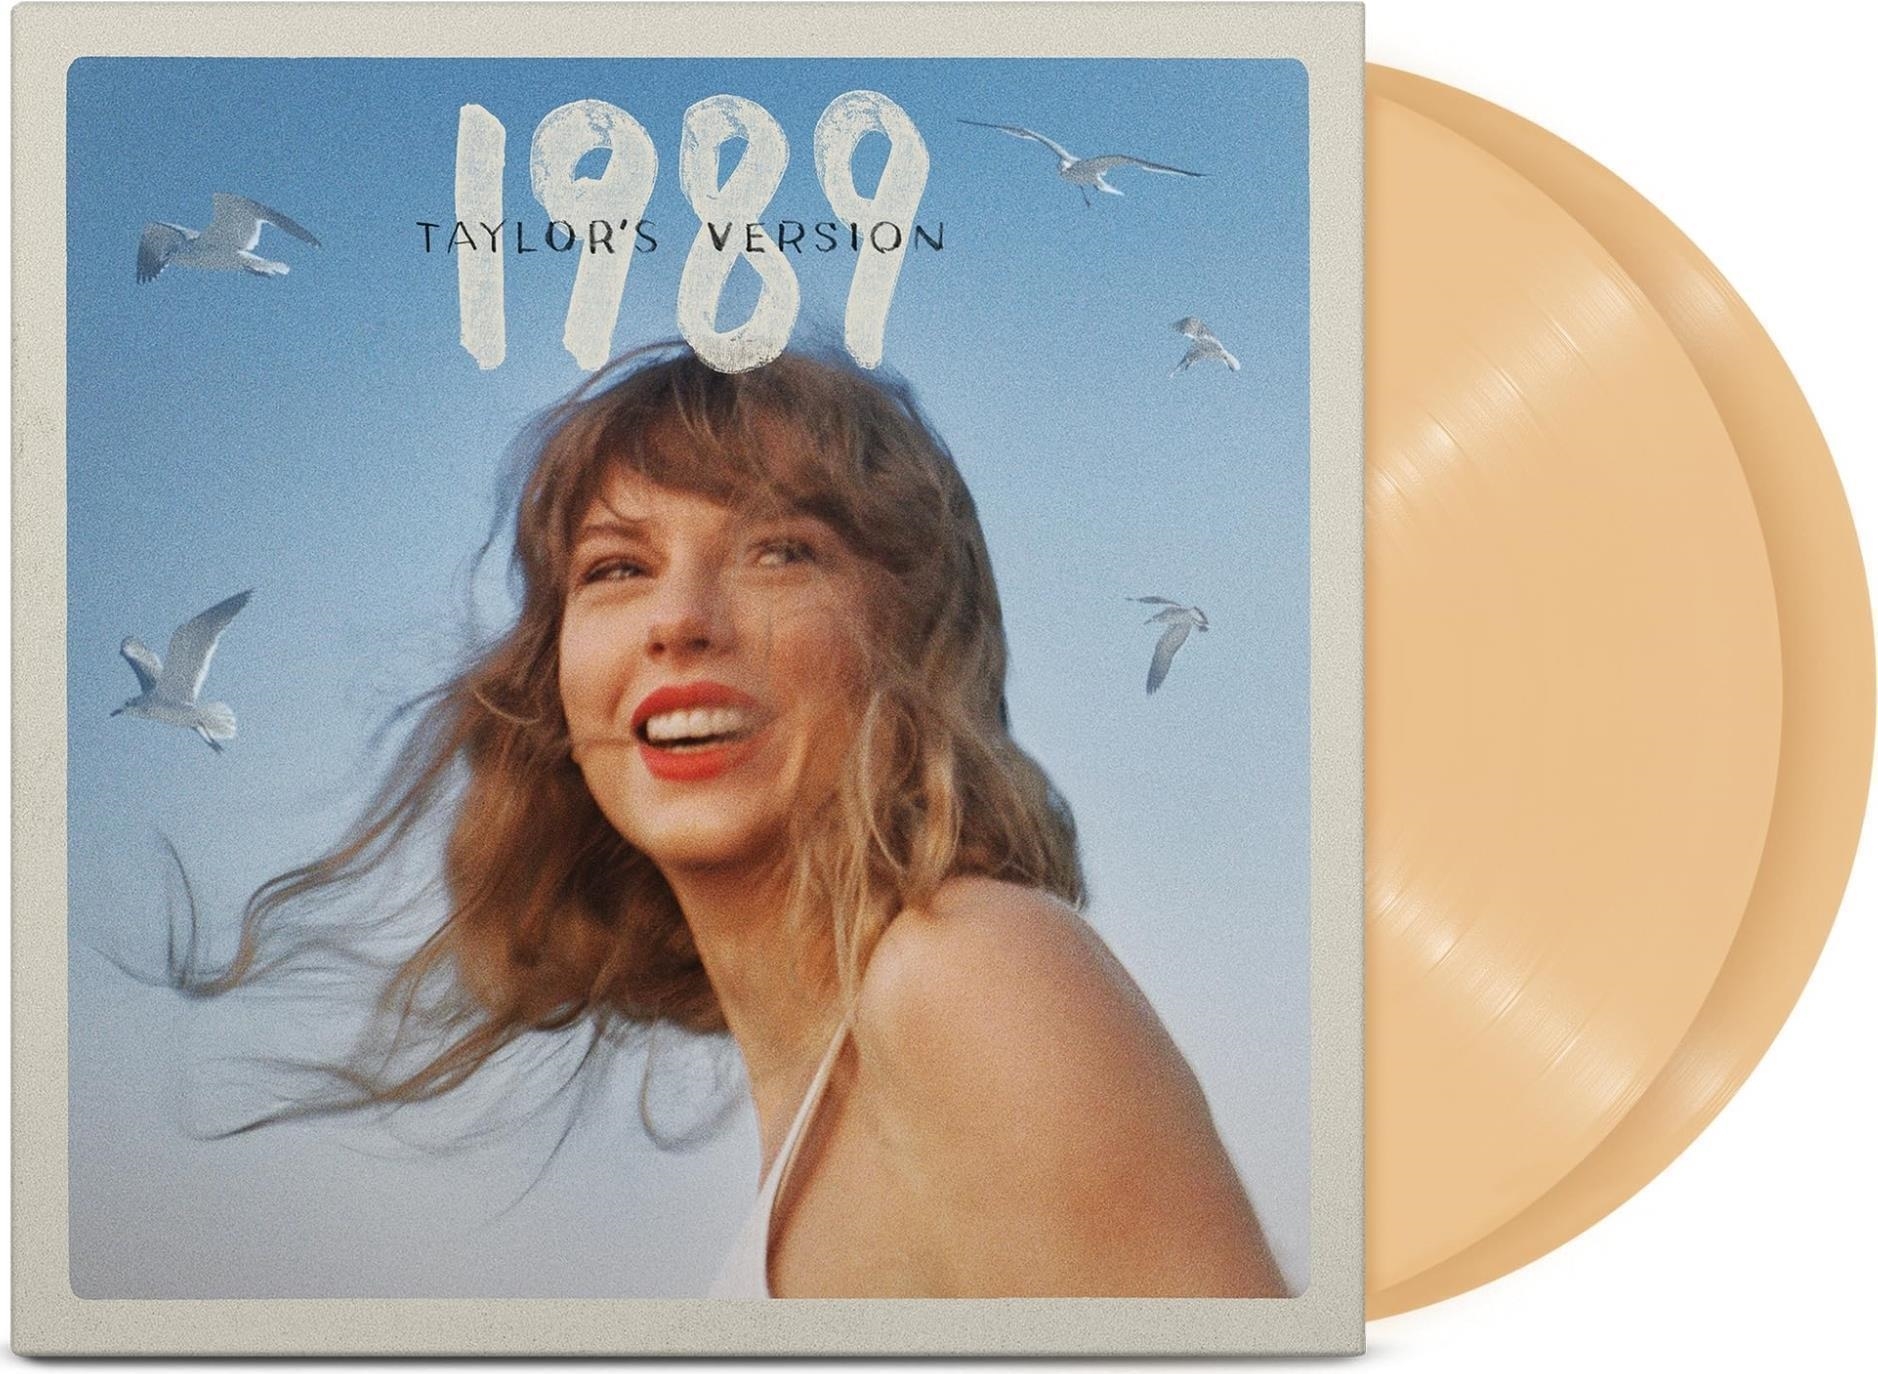 Vinile Taylor Swift - 1990 (Taylor's Version) (Tangerine Vinyl) NUOVO SIGILLATO, EDIZIONE DEL 27/10/2023 SUBITO DISPONIBILE